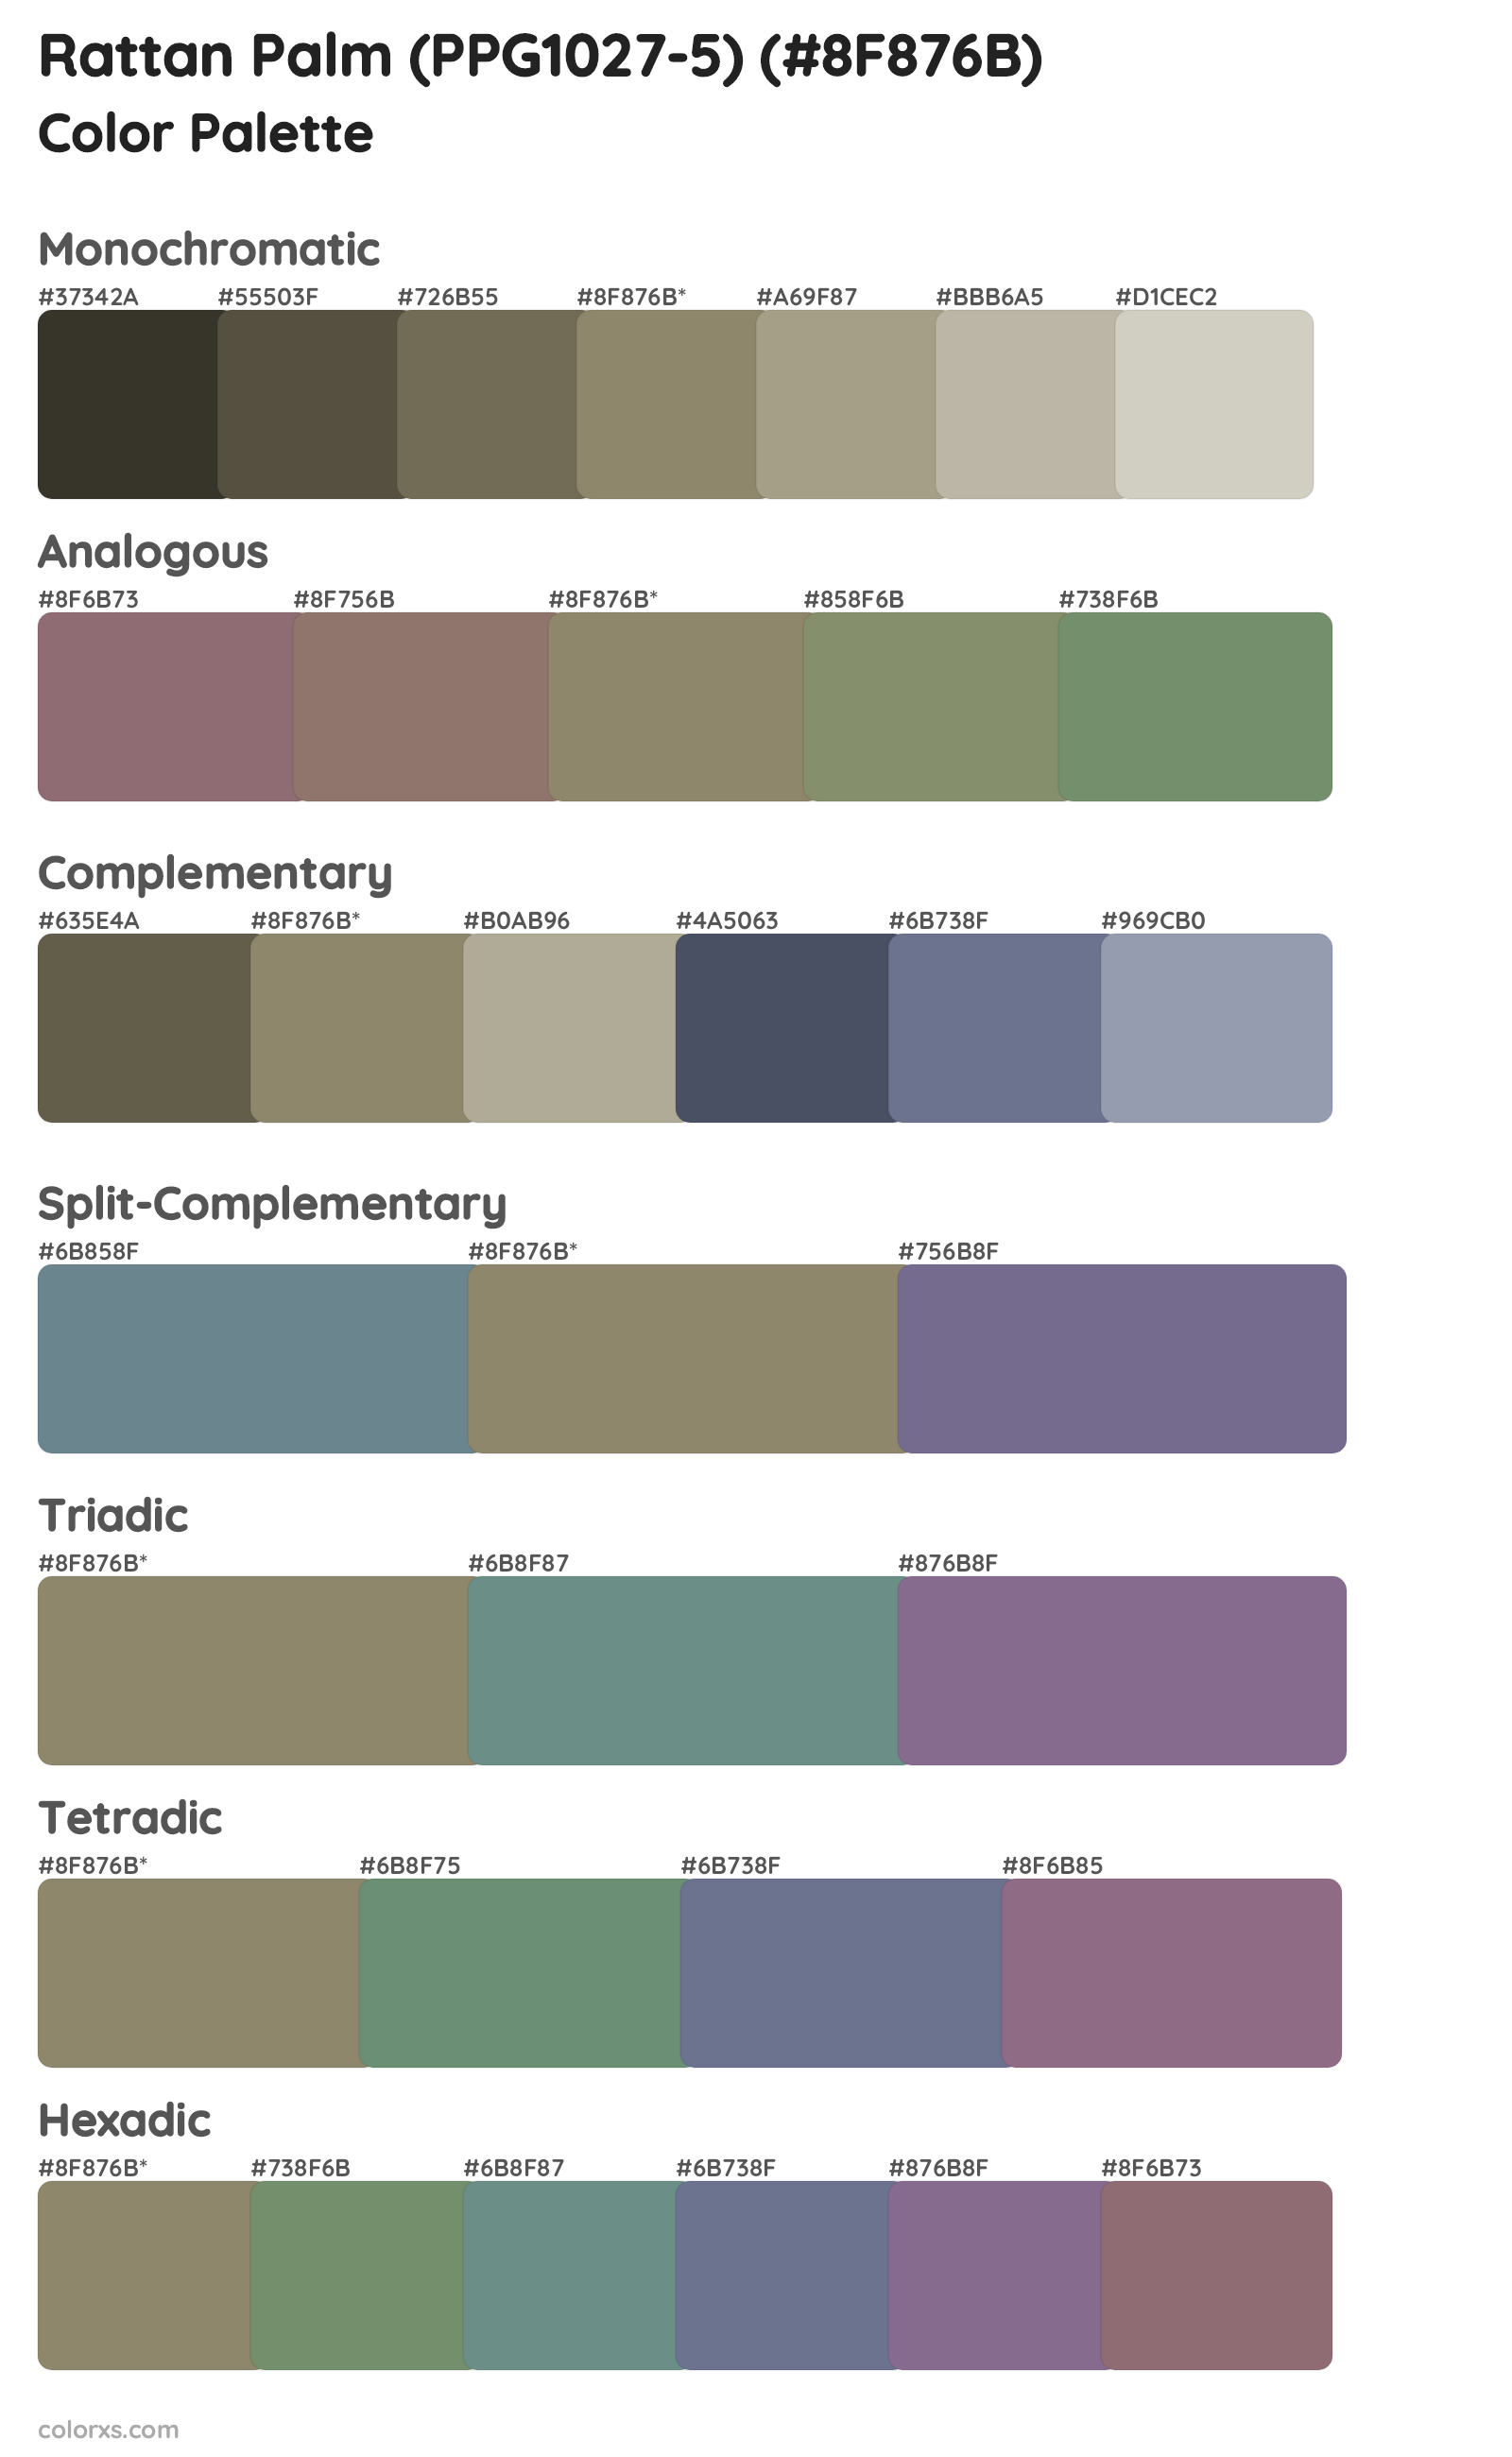 Rattan Palm (PPG1027-5) Color Scheme Palettes